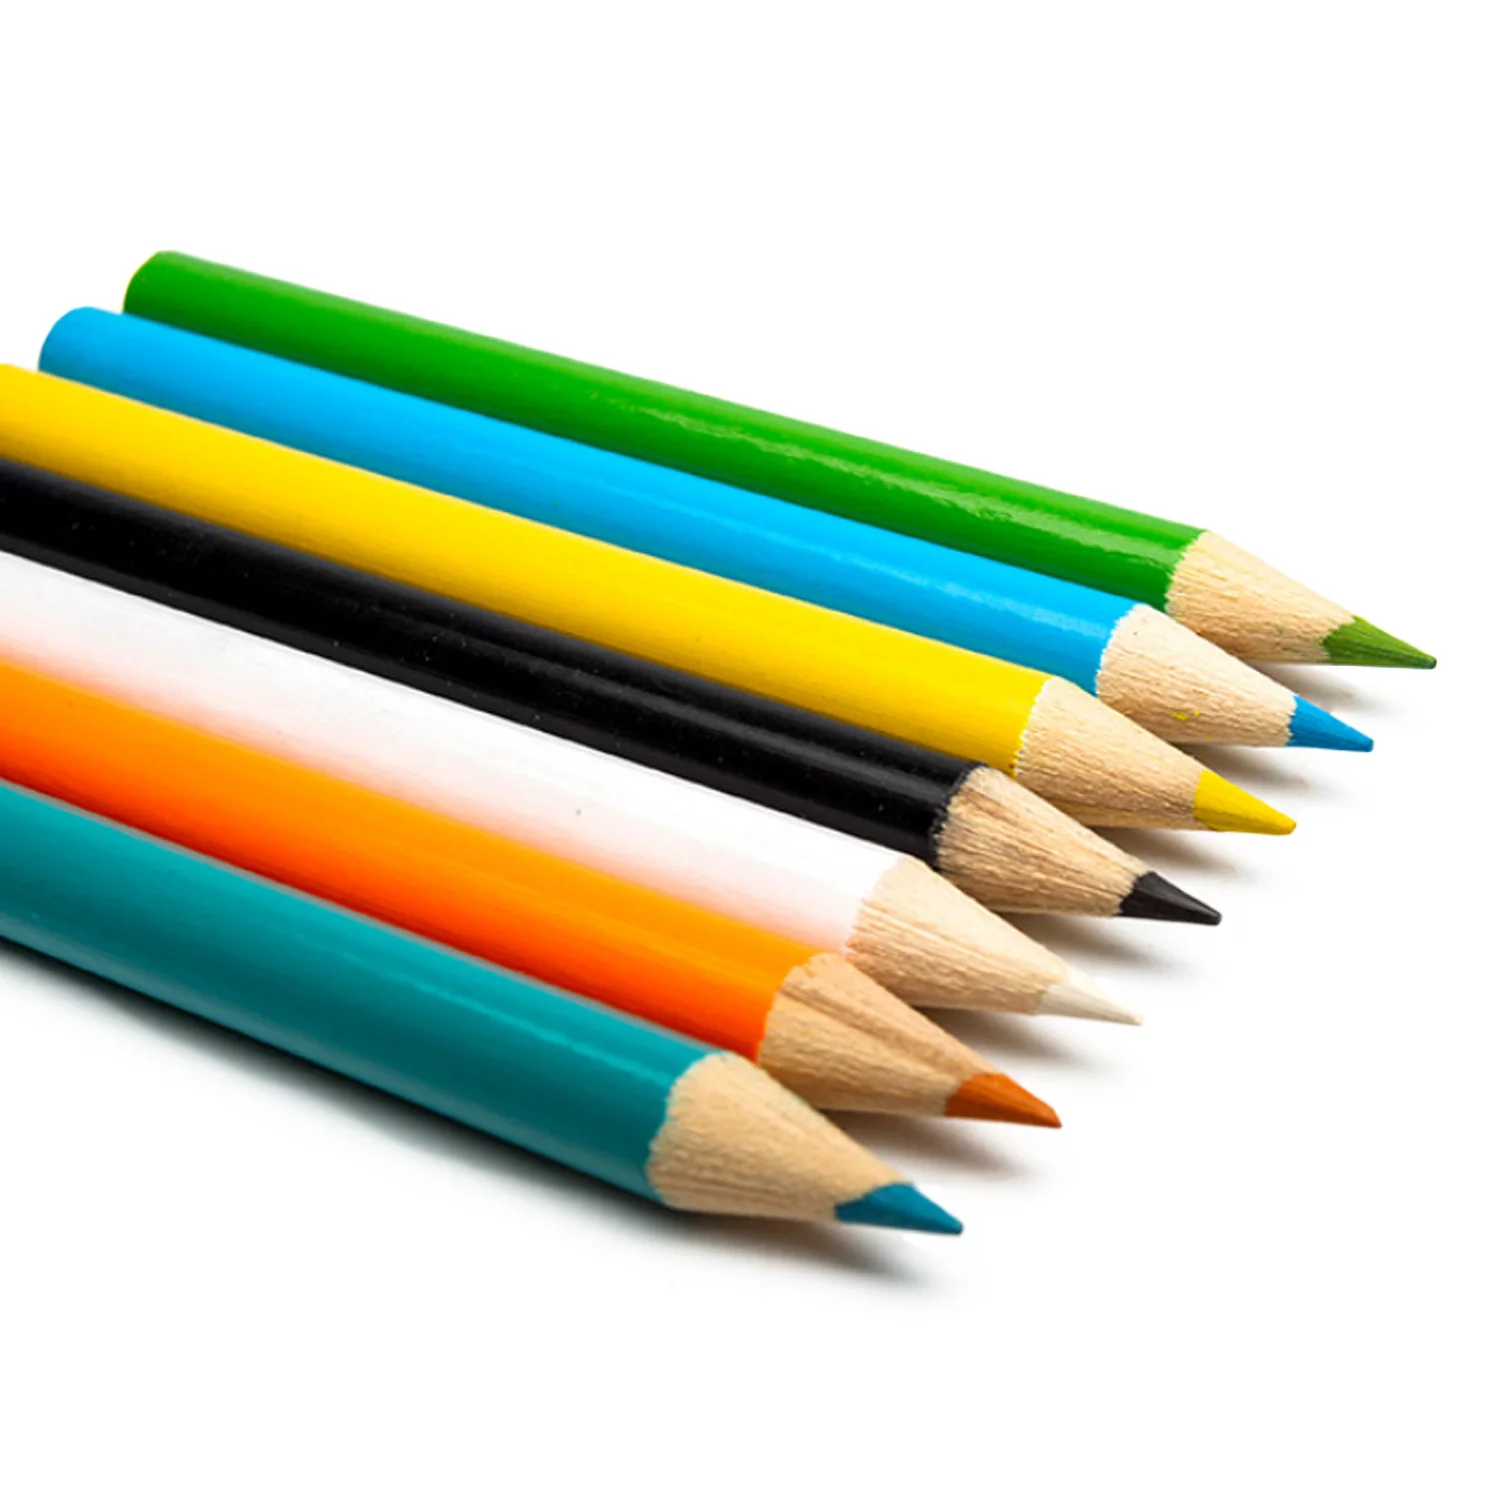 Маркеры, 176 шт., цветной карандаш, набор для рисования художника, кисть для рисования, граффити, карандаш, маркер, детский подарок, Daliy, развлекательные игрушки, художественные наборы